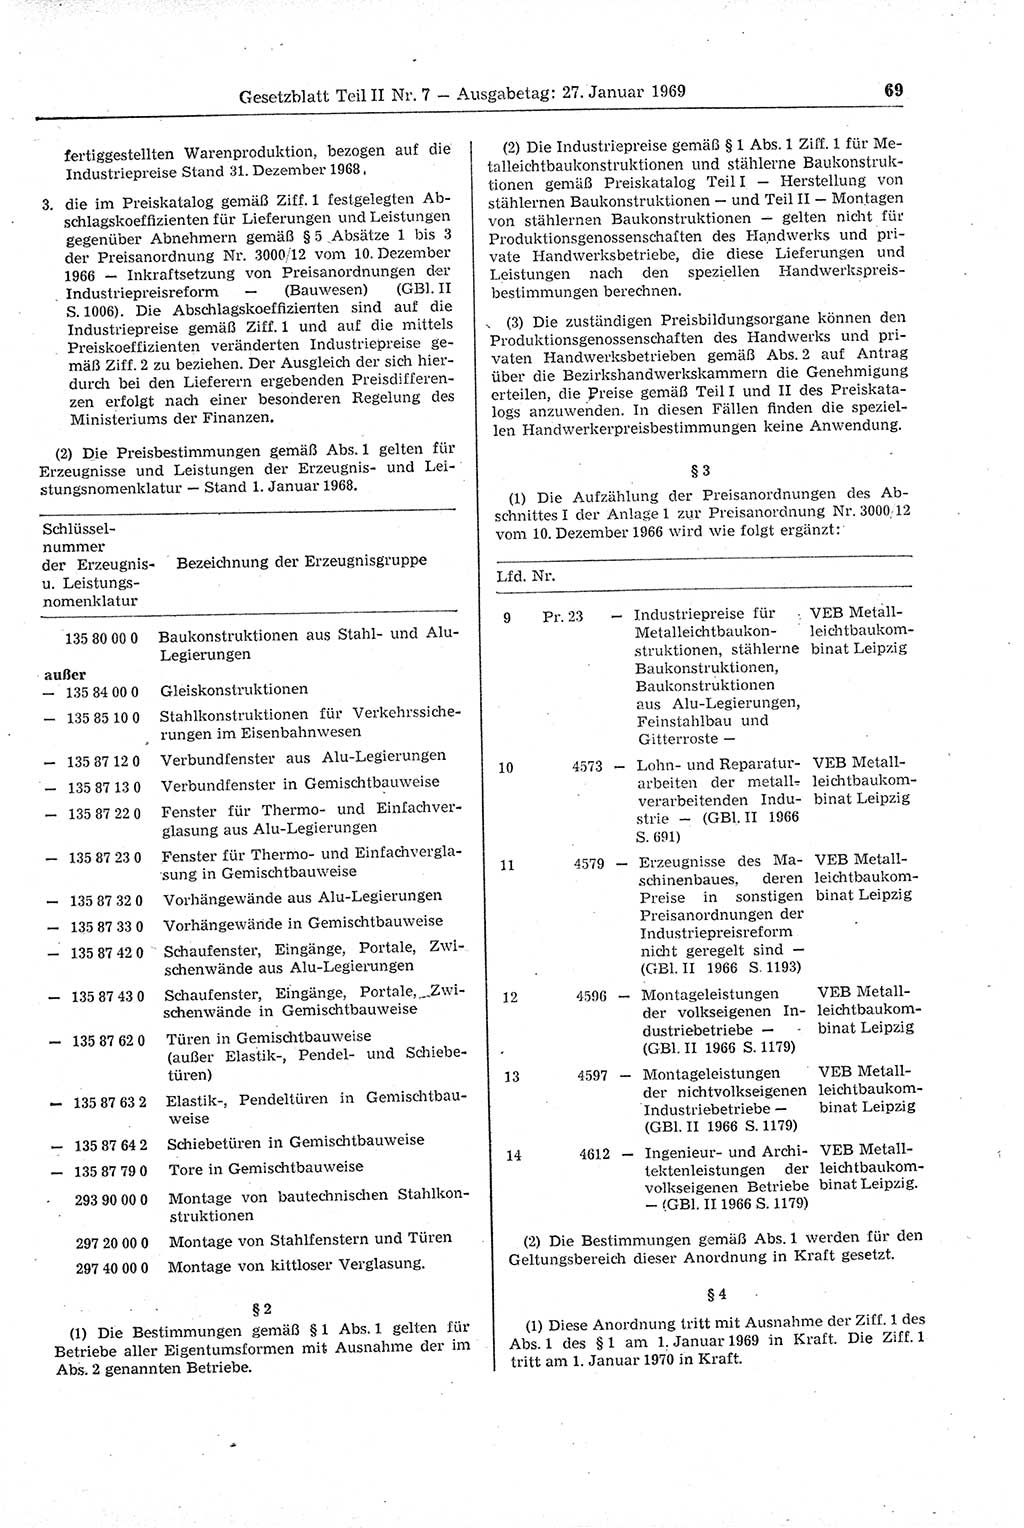 Gesetzblatt (GBl.) der Deutschen Demokratischen Republik (DDR) Teil ⅠⅠ 1969, Seite 69 (GBl. DDR ⅠⅠ 1969, S. 69)